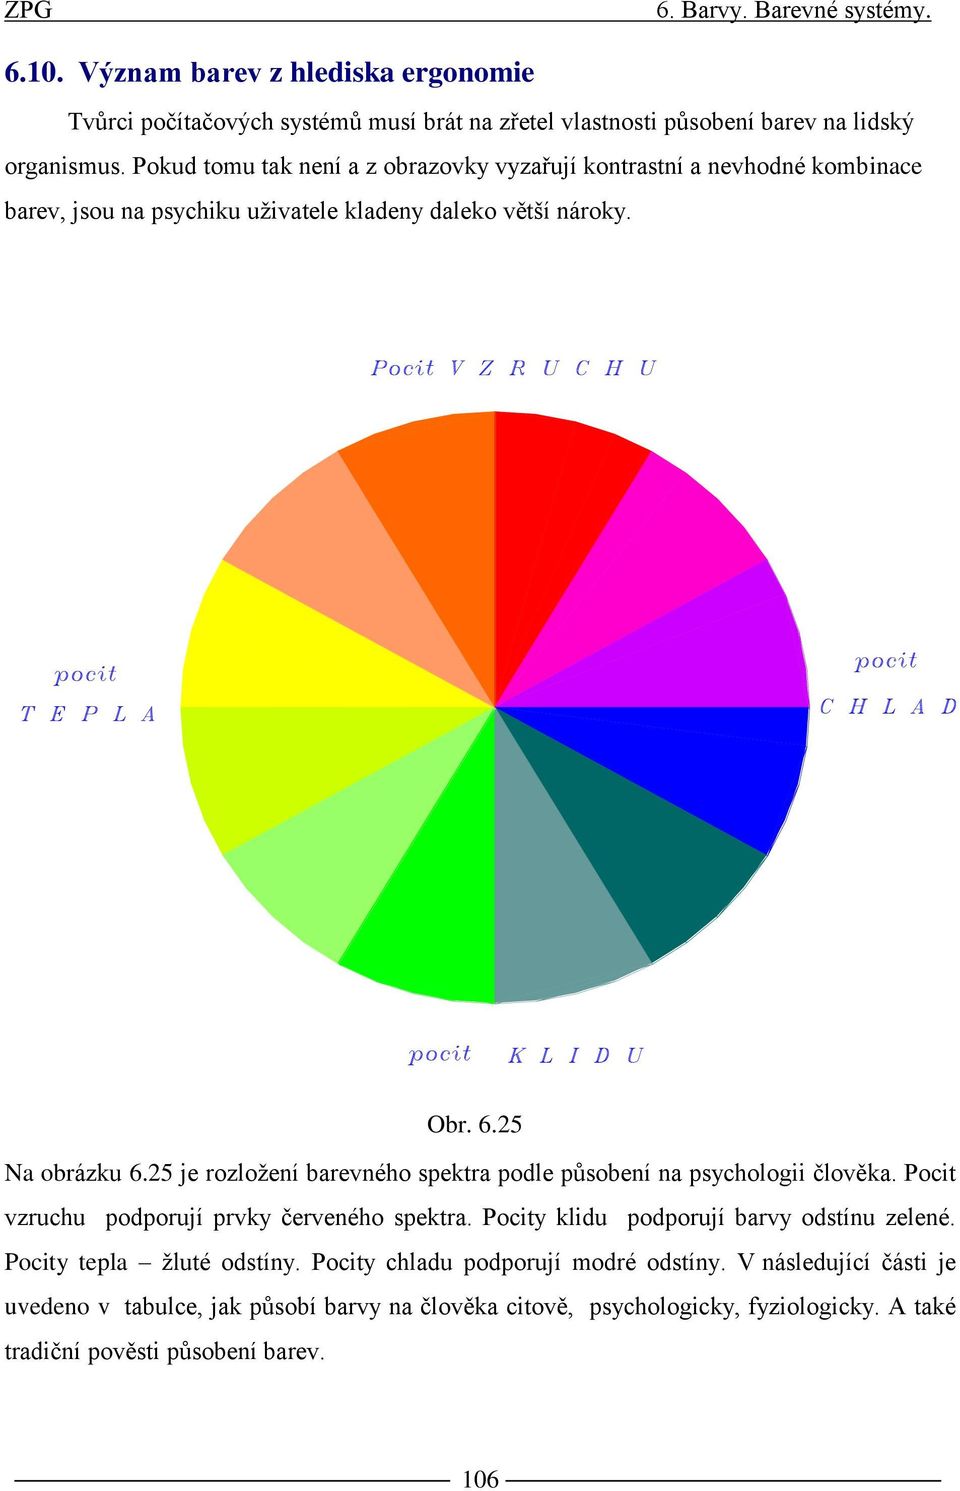 25 je rozložení barevného spektra podle působení na psychologii člověka. Pocit vzruchu podporují prvky červeného spektra. Pocity klidu podporují barvy odstínu zelené.